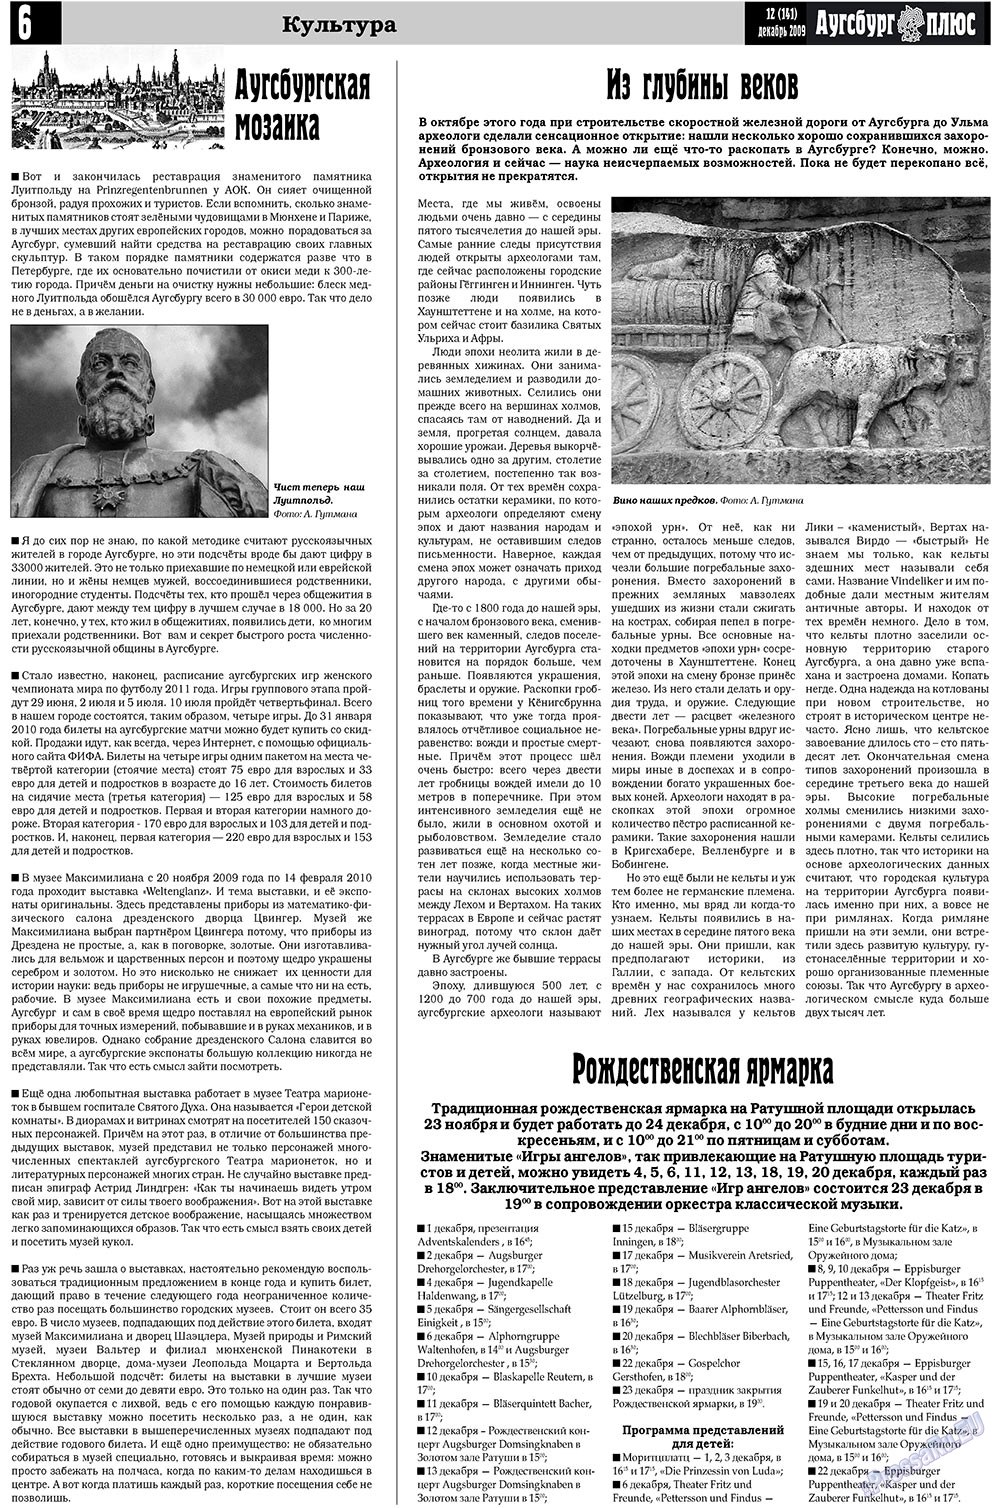 Германия плюс (газета). 2009 год, номер 12, стр. 22